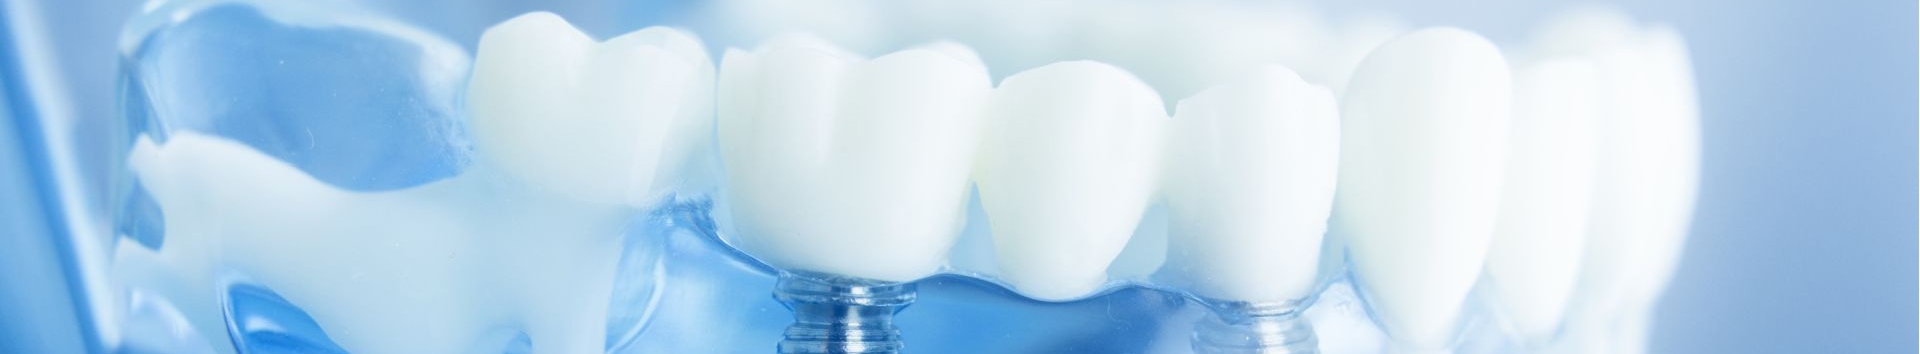 Implante dental: Como escolher o melhor implantodontista?